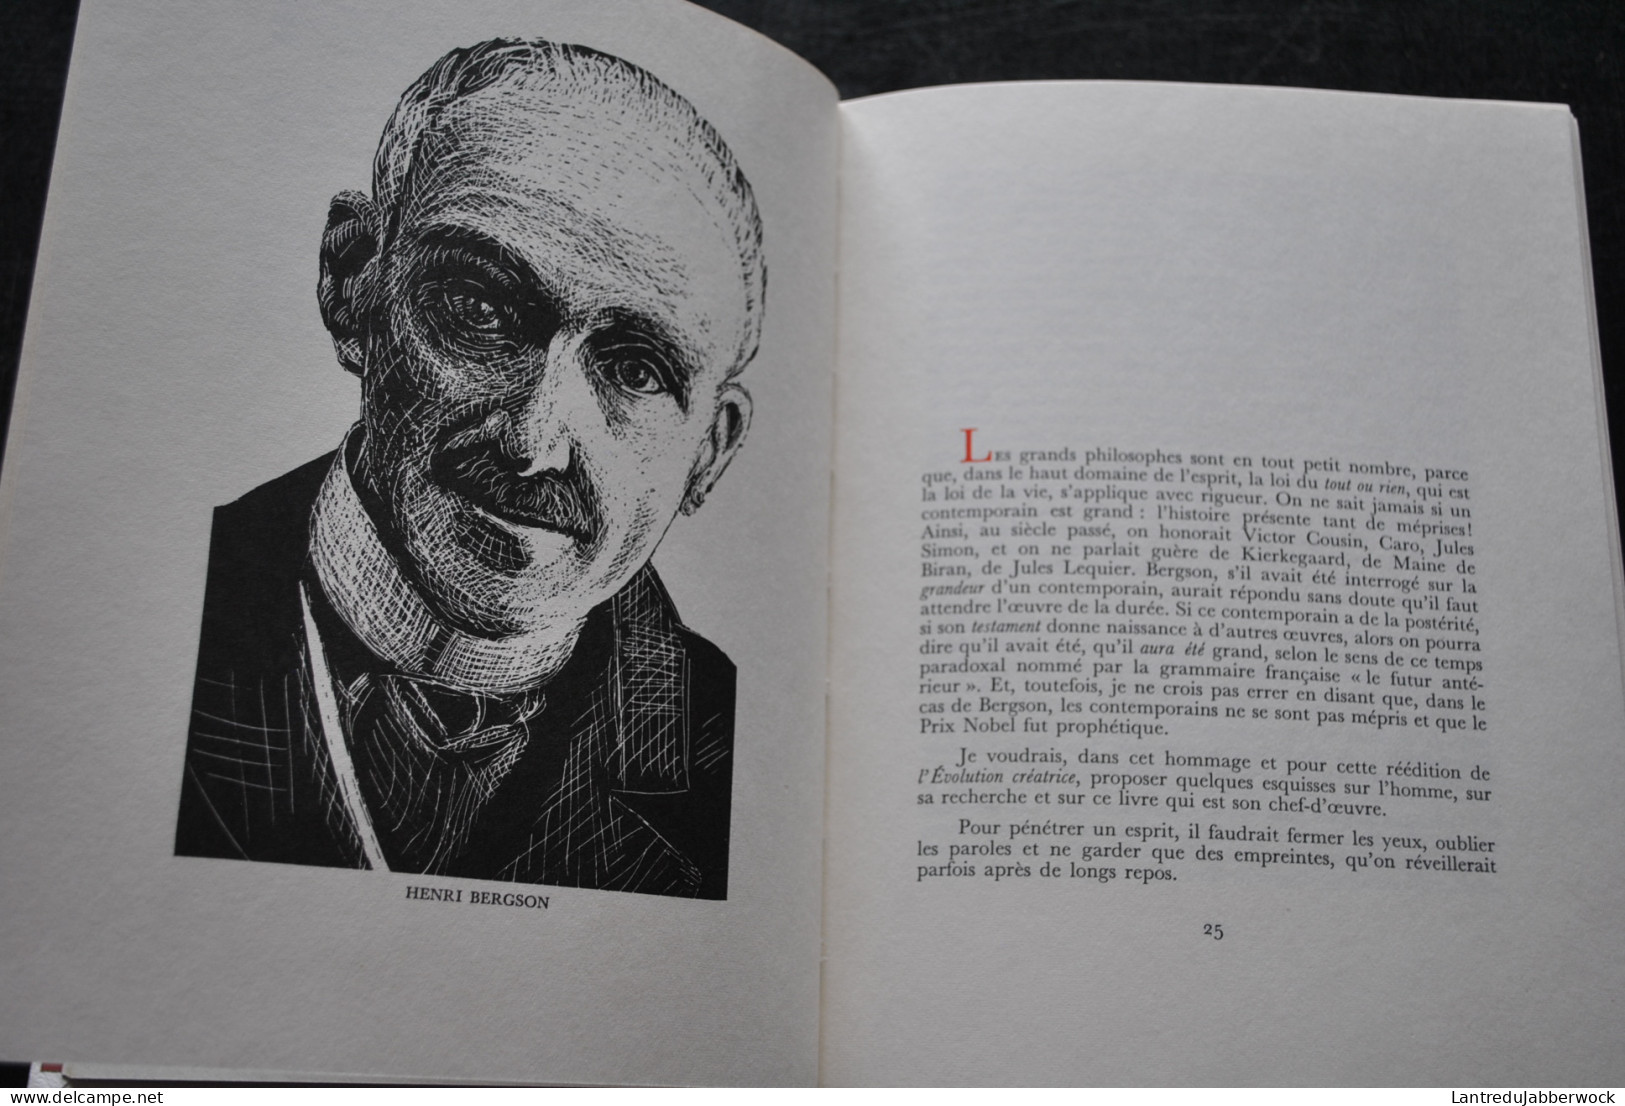 Henri BERGSON L'évolution créatrice Illustration Kischka Cauvet Reliure Picasso Collection Prix Nobel de Littérature